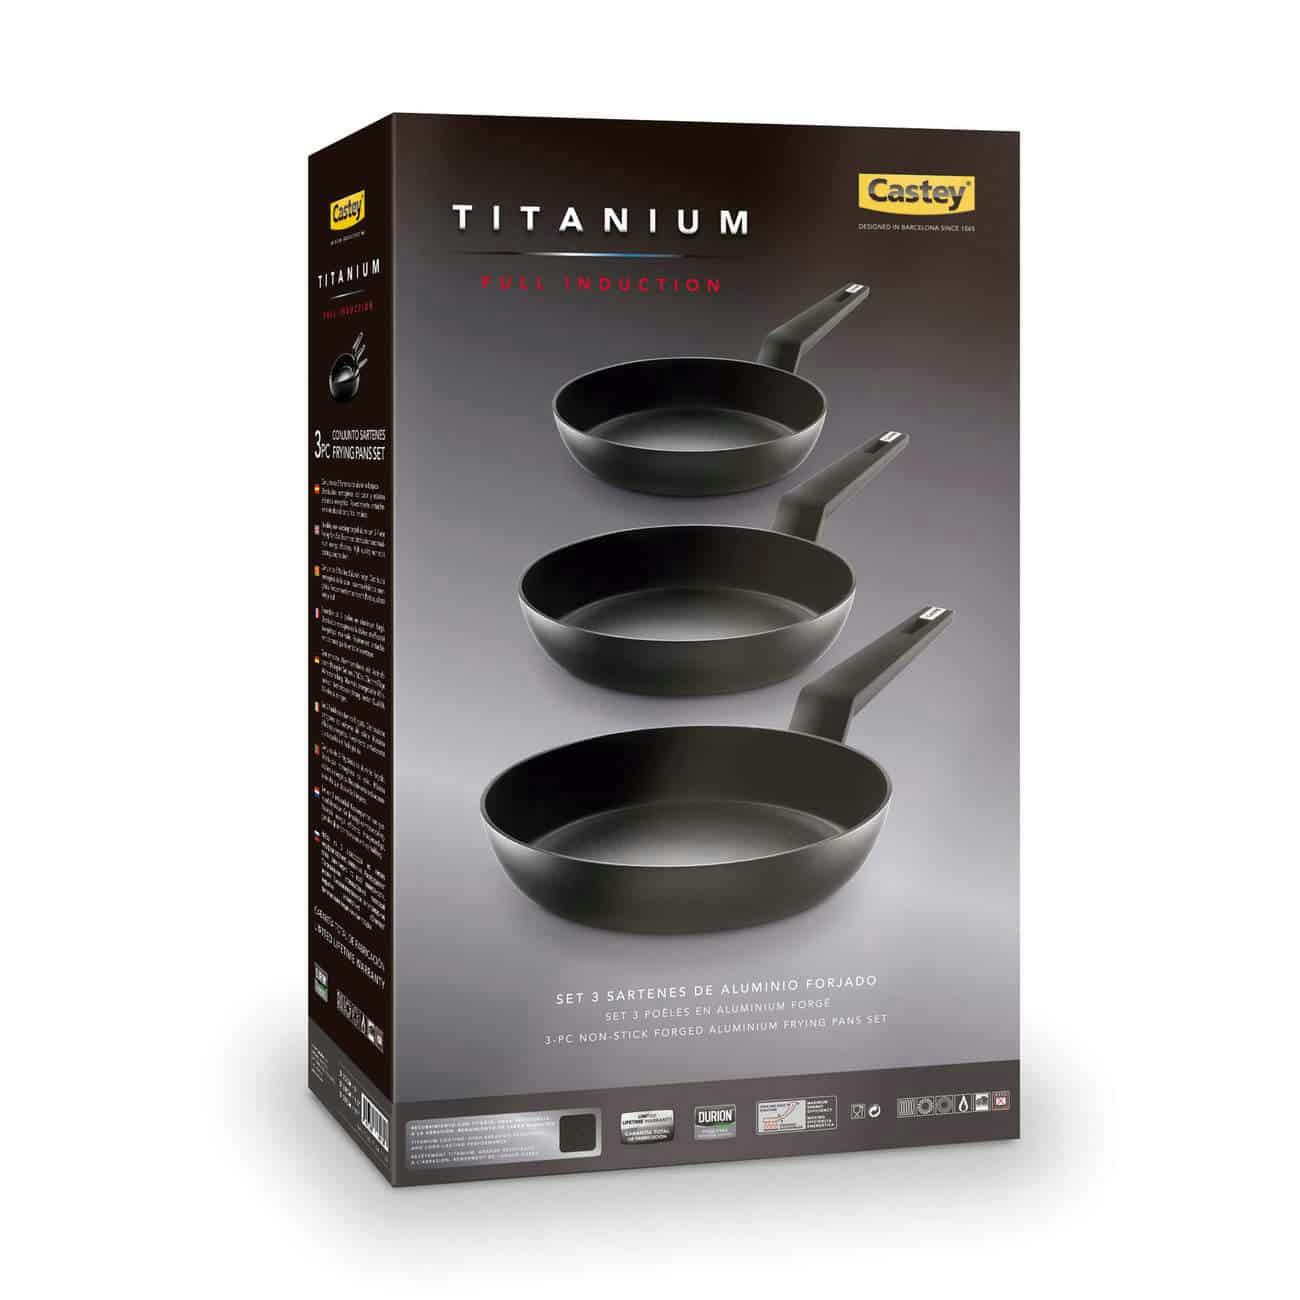 Castey set 3 sartenes titanium - 18, 22 y 26 cm